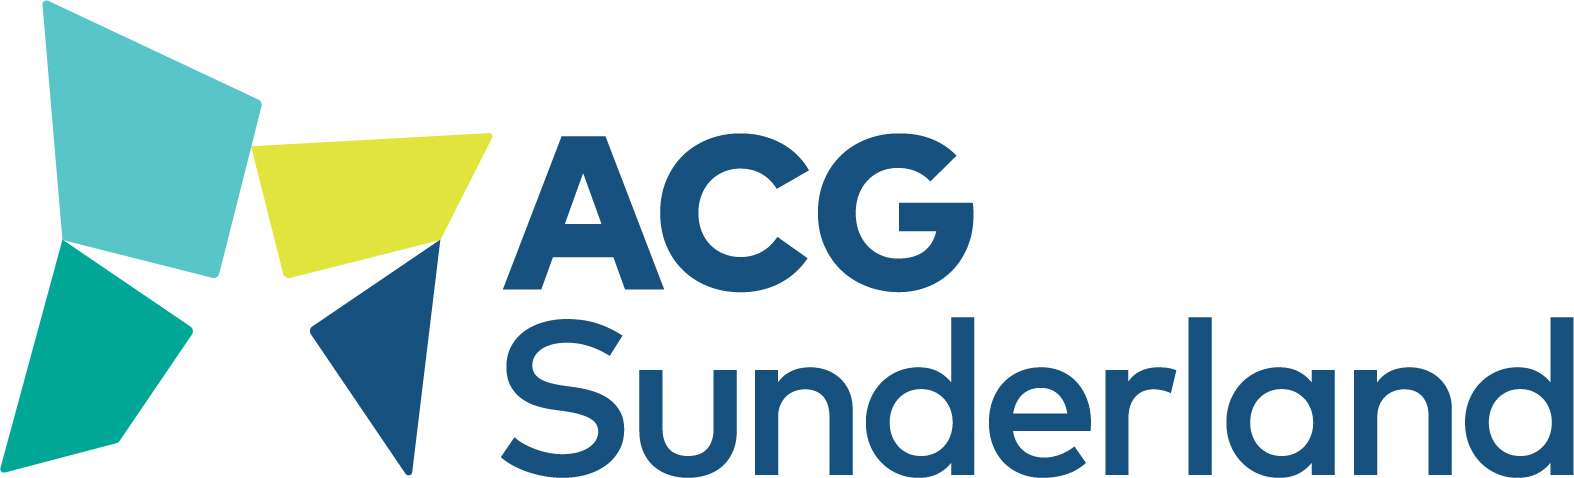 ACG-Sunderland-logo